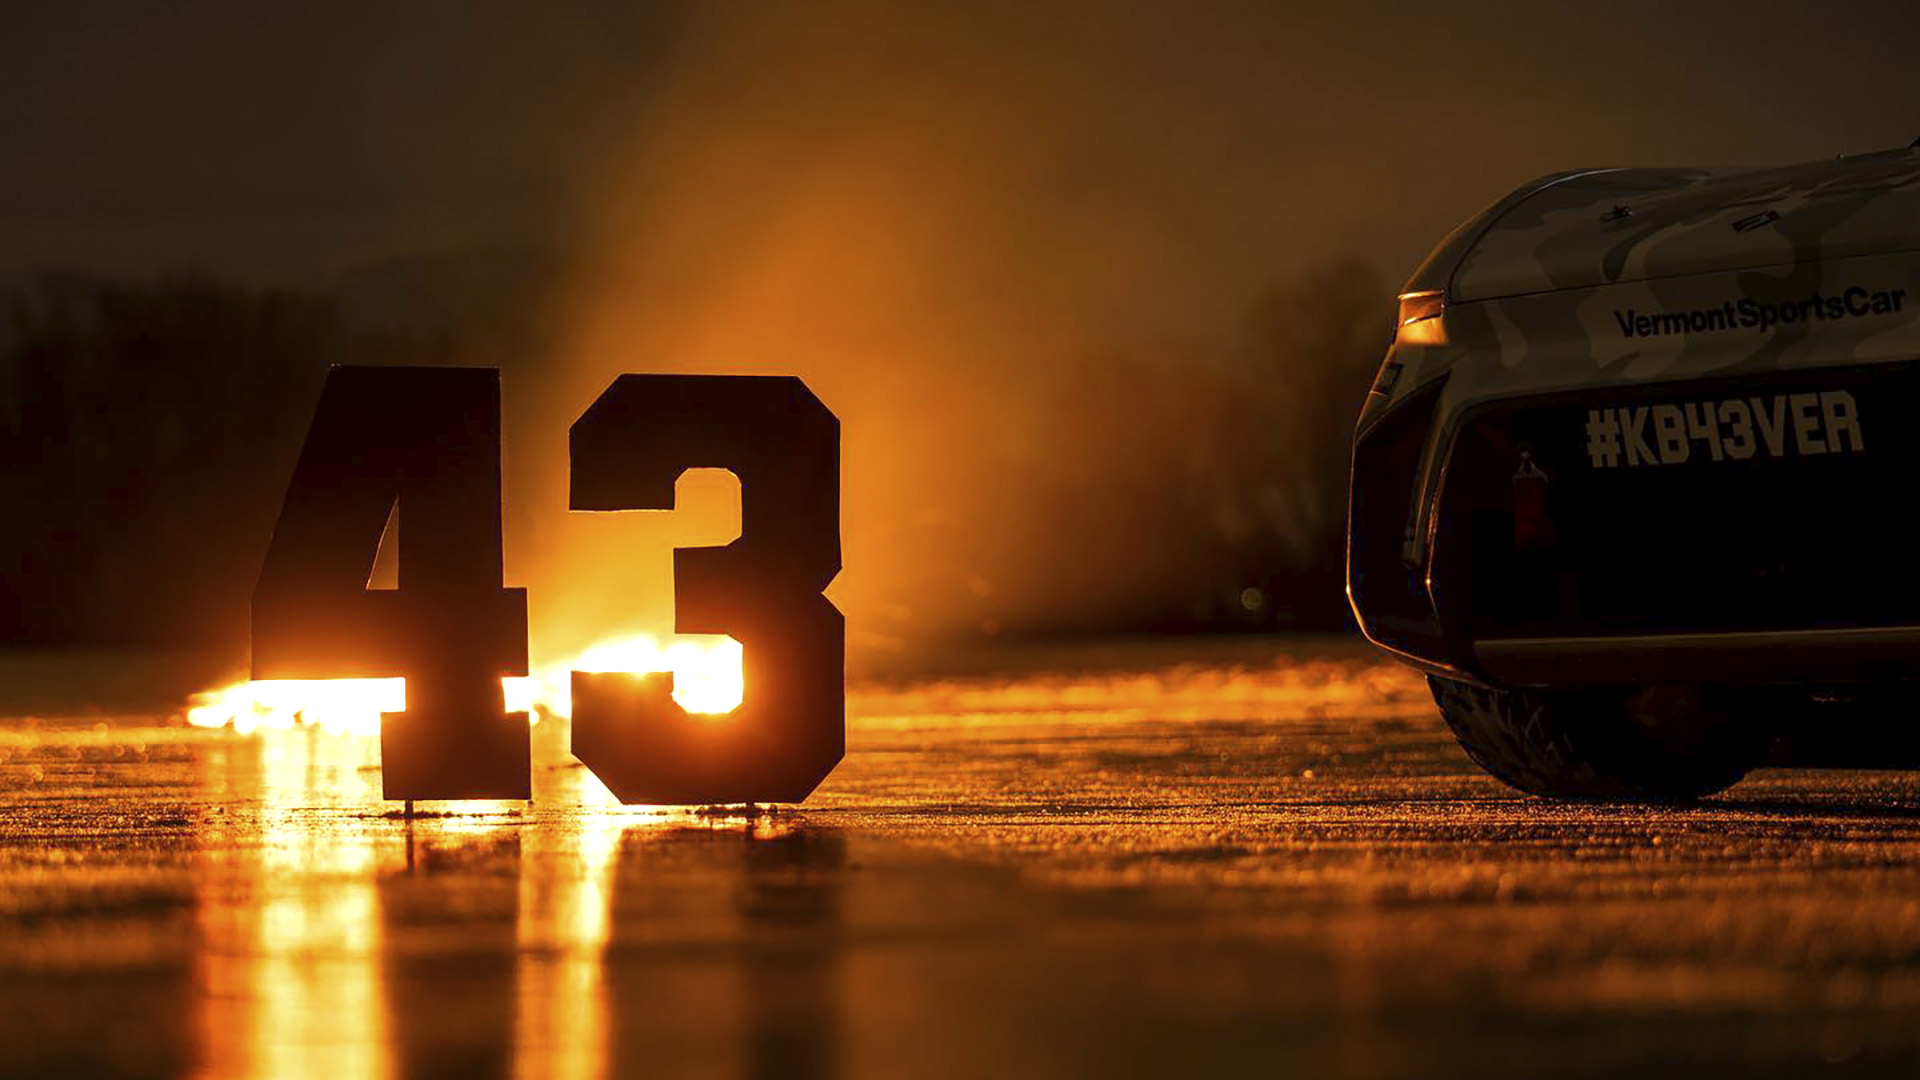 El número 43 de Block fue retirado de las carreras de Rallycross en su honor, y sirvió para presentar el auto decorado con su diseño de 2005 en el campeonato actual donde se le rindió un sentido homenaje